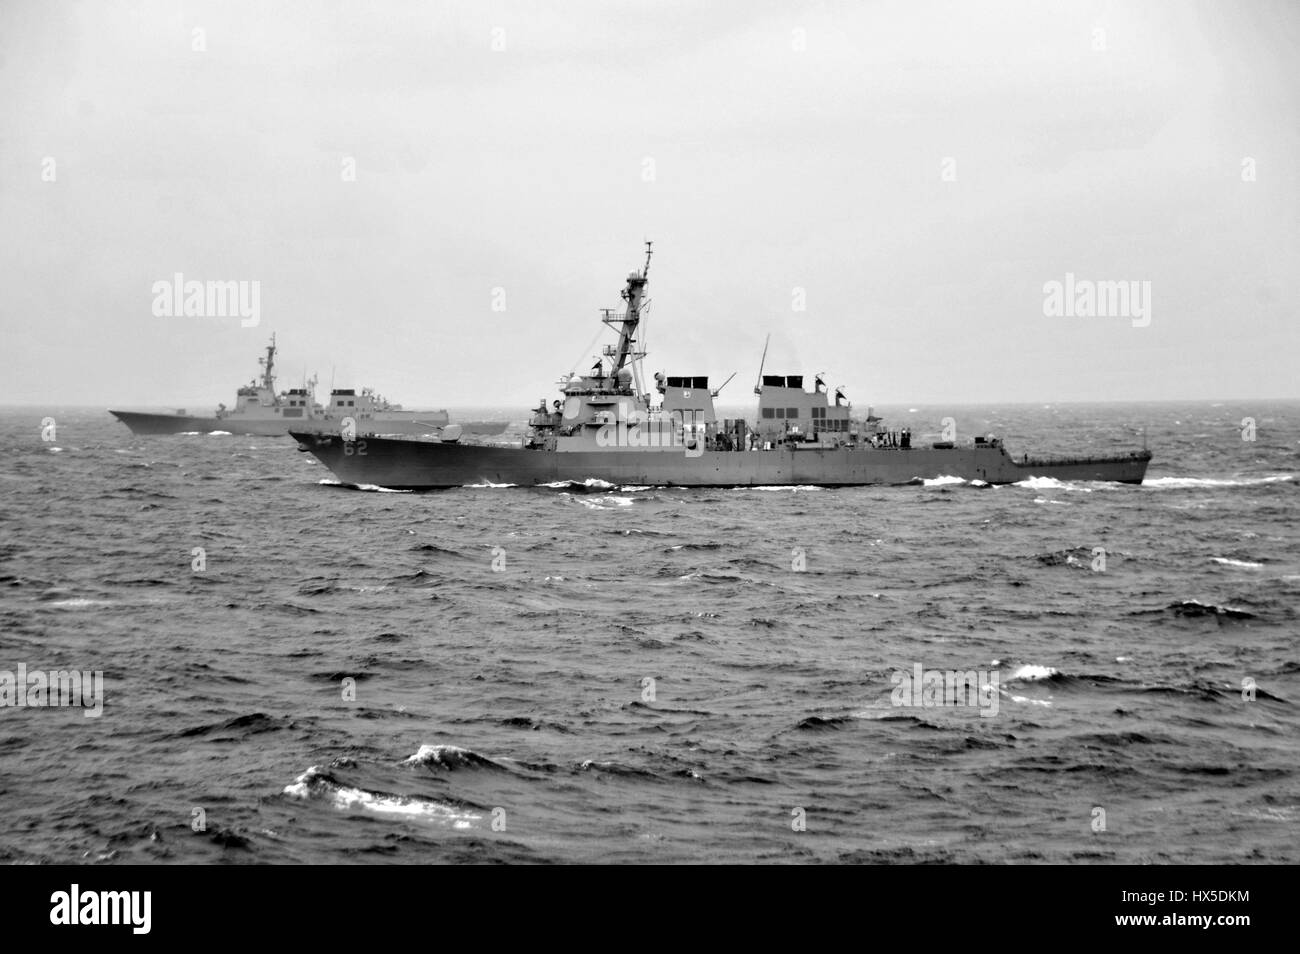 La classe Arleigh Burke destroyer lance-missiles USS Fitzgerald (DDG 62) effectue des manoeuvres tactiques avec un navire de la marine de la République de Corée, à l'est de la péninsule de Corée, 2013. Image courtoisie Ricardo R. Guzman/US Navy. Banque D'Images